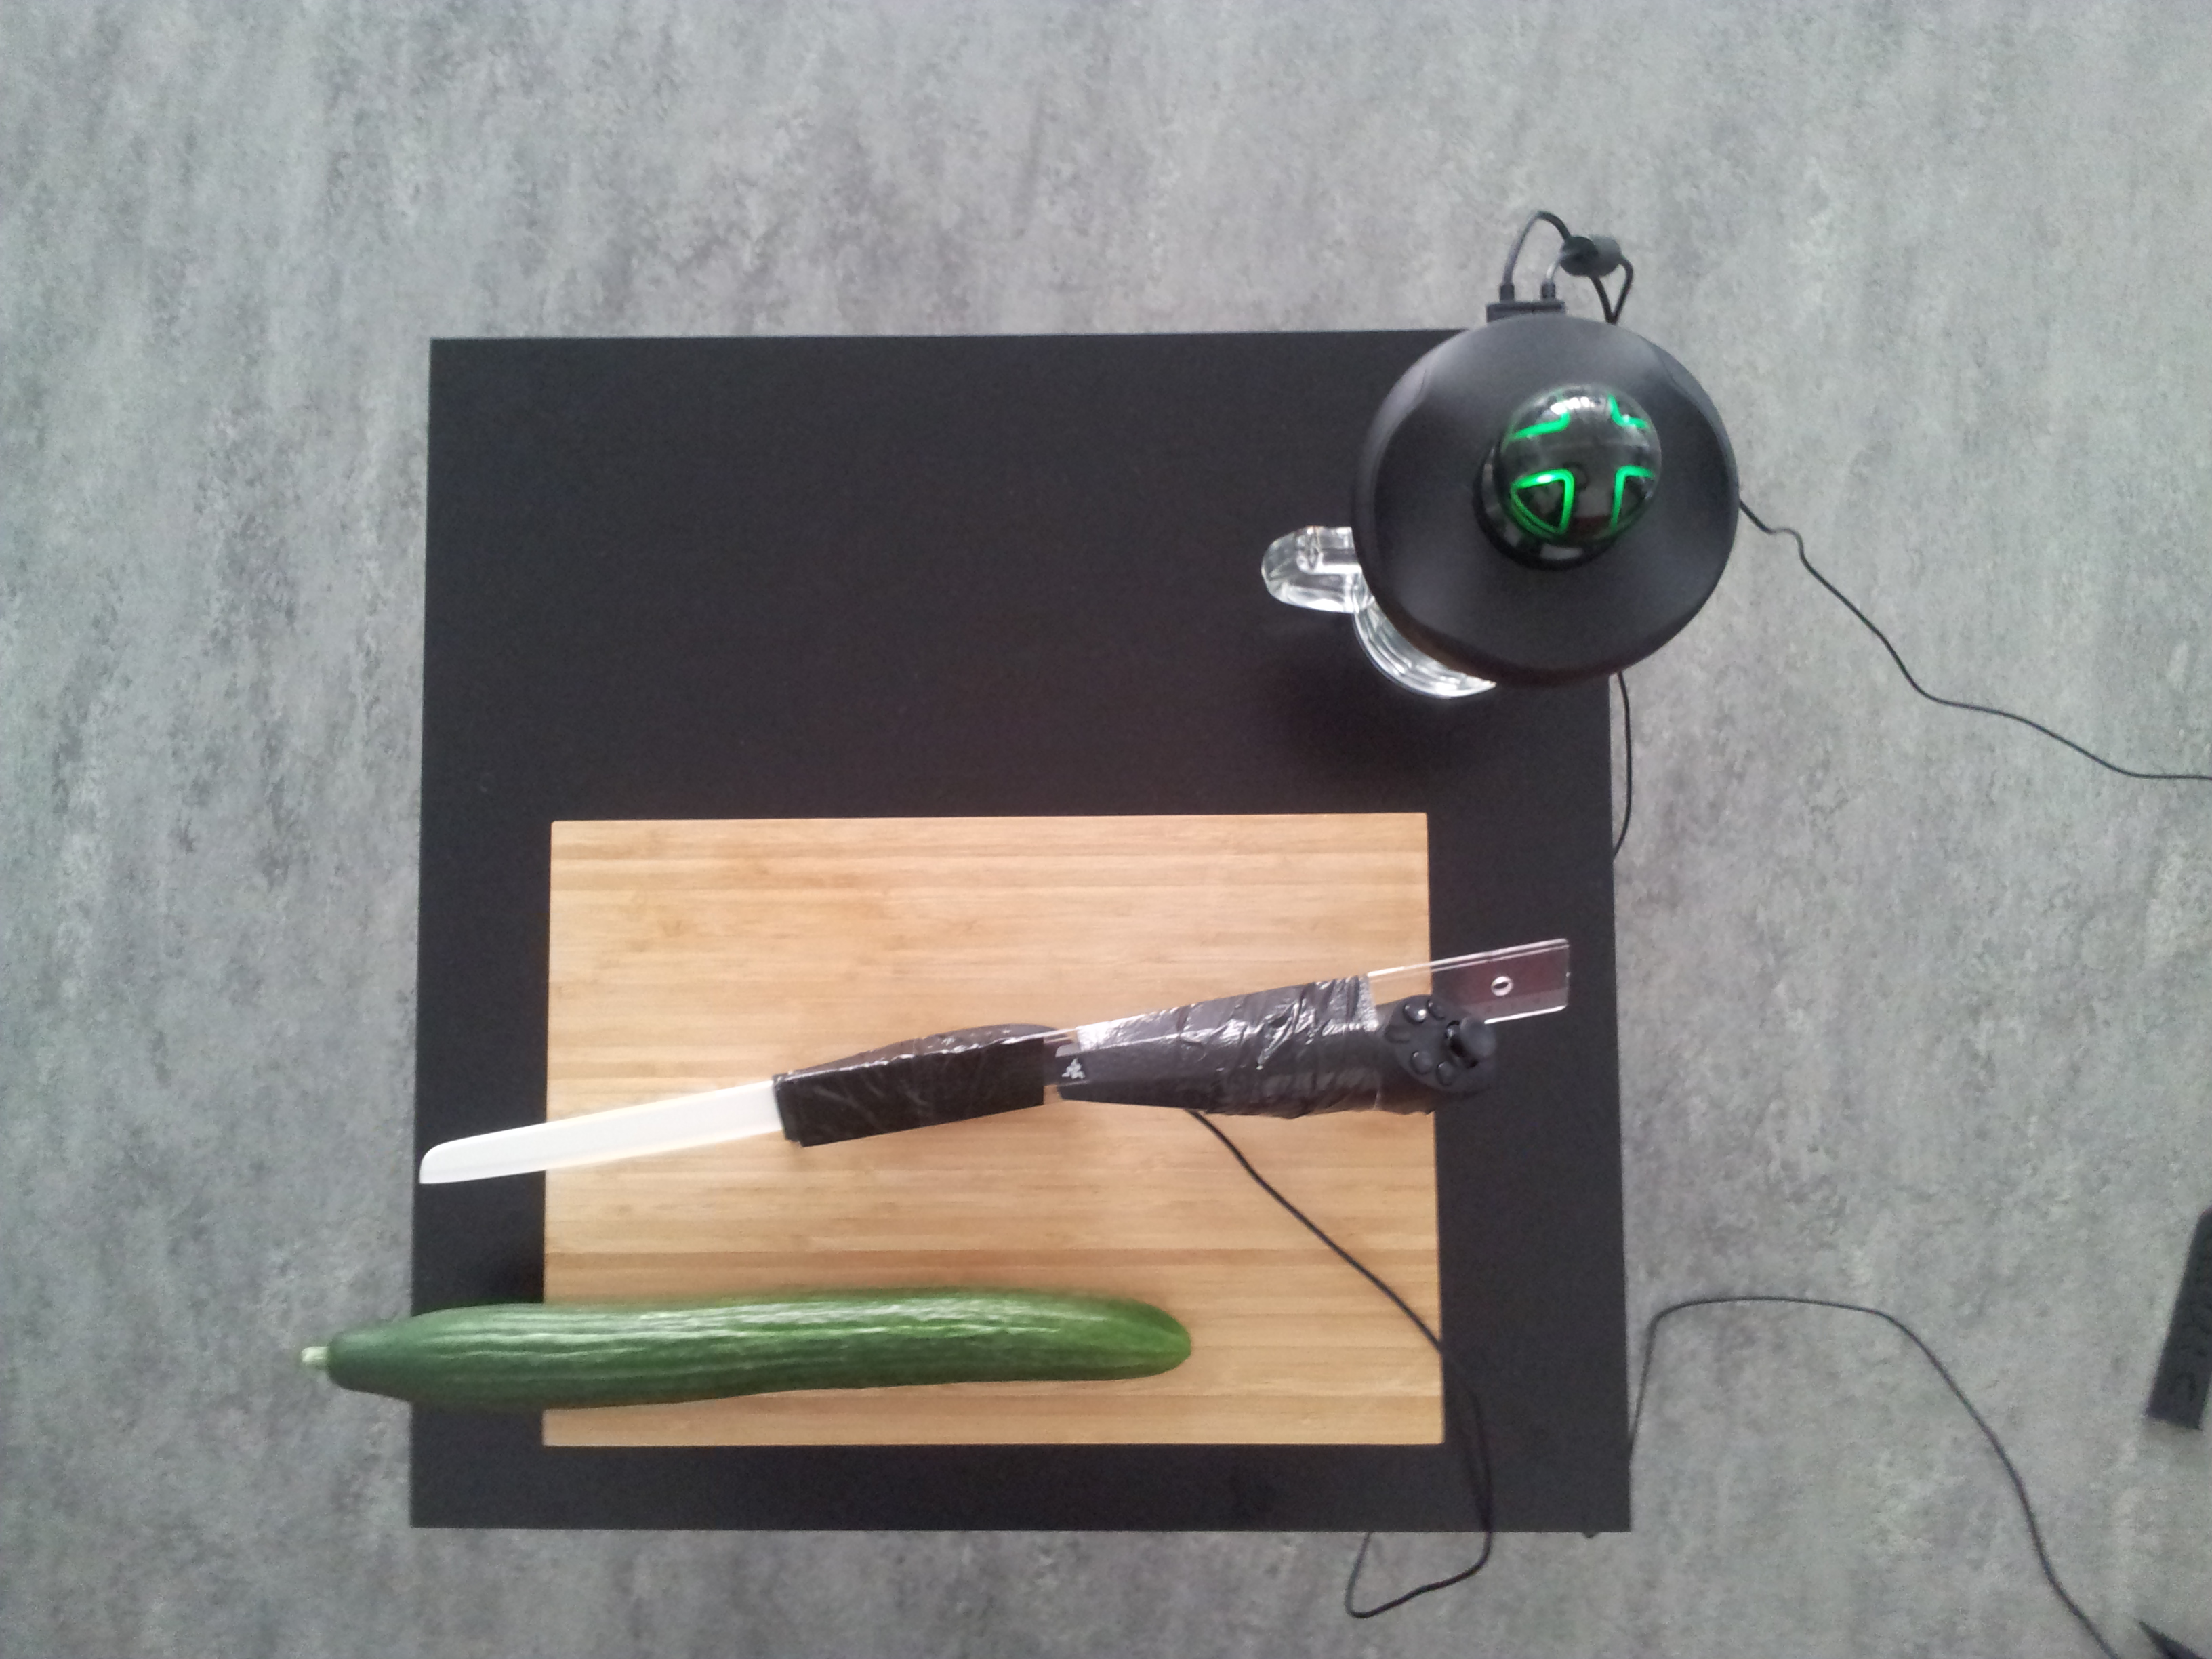 cucumber cutting setup (top)